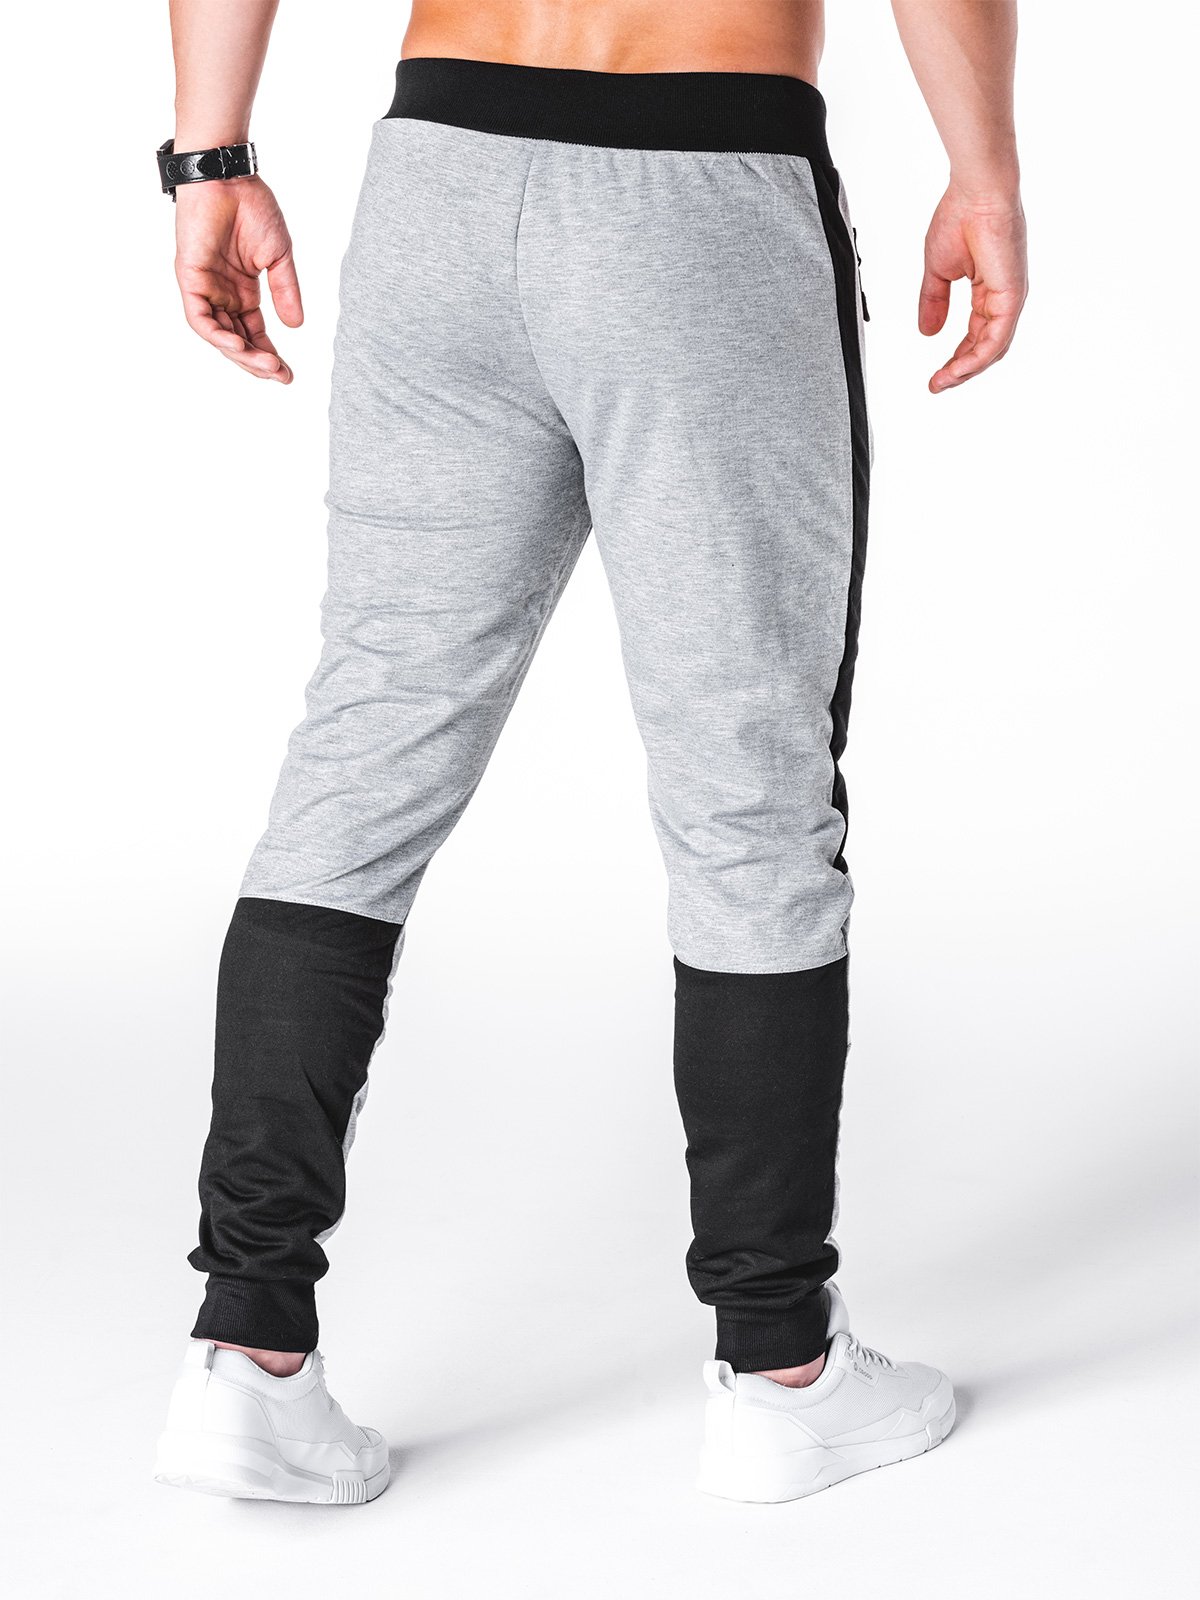 Men's sweatpants P699 - grey | MODONE wholesale - Clothing For Men